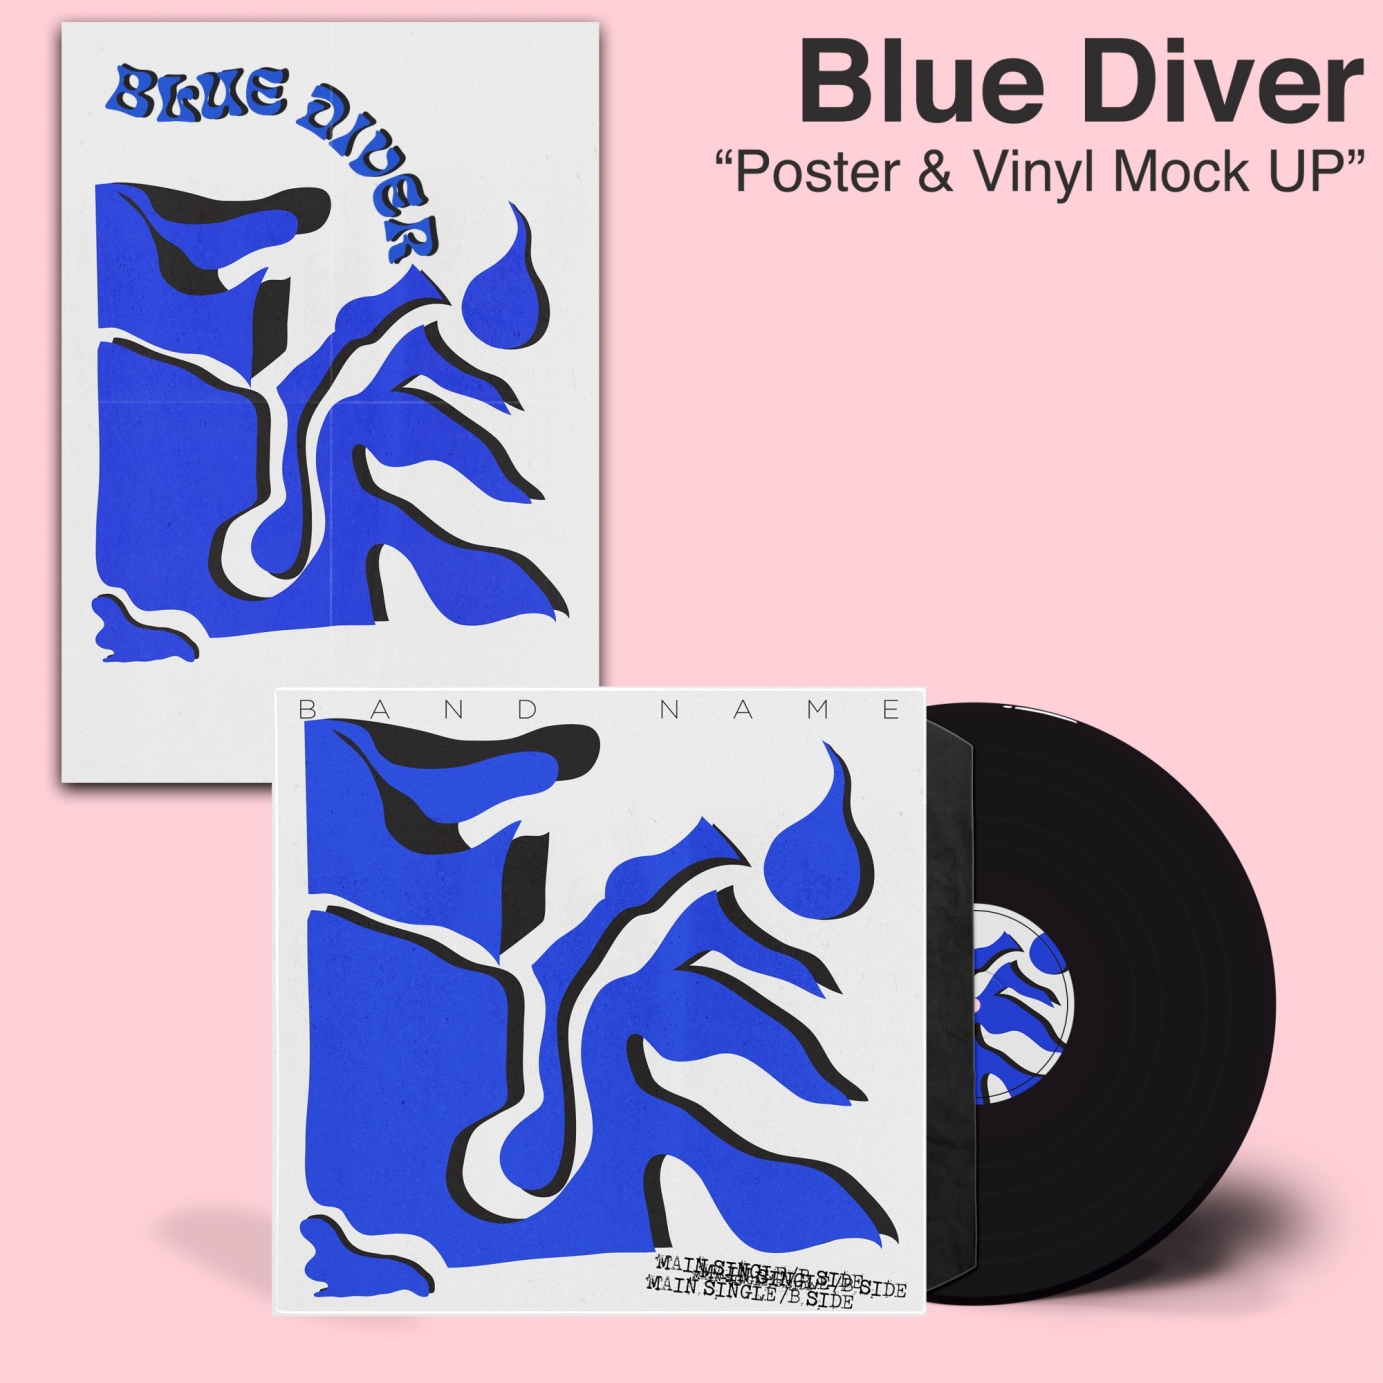 Blue Diver Concept